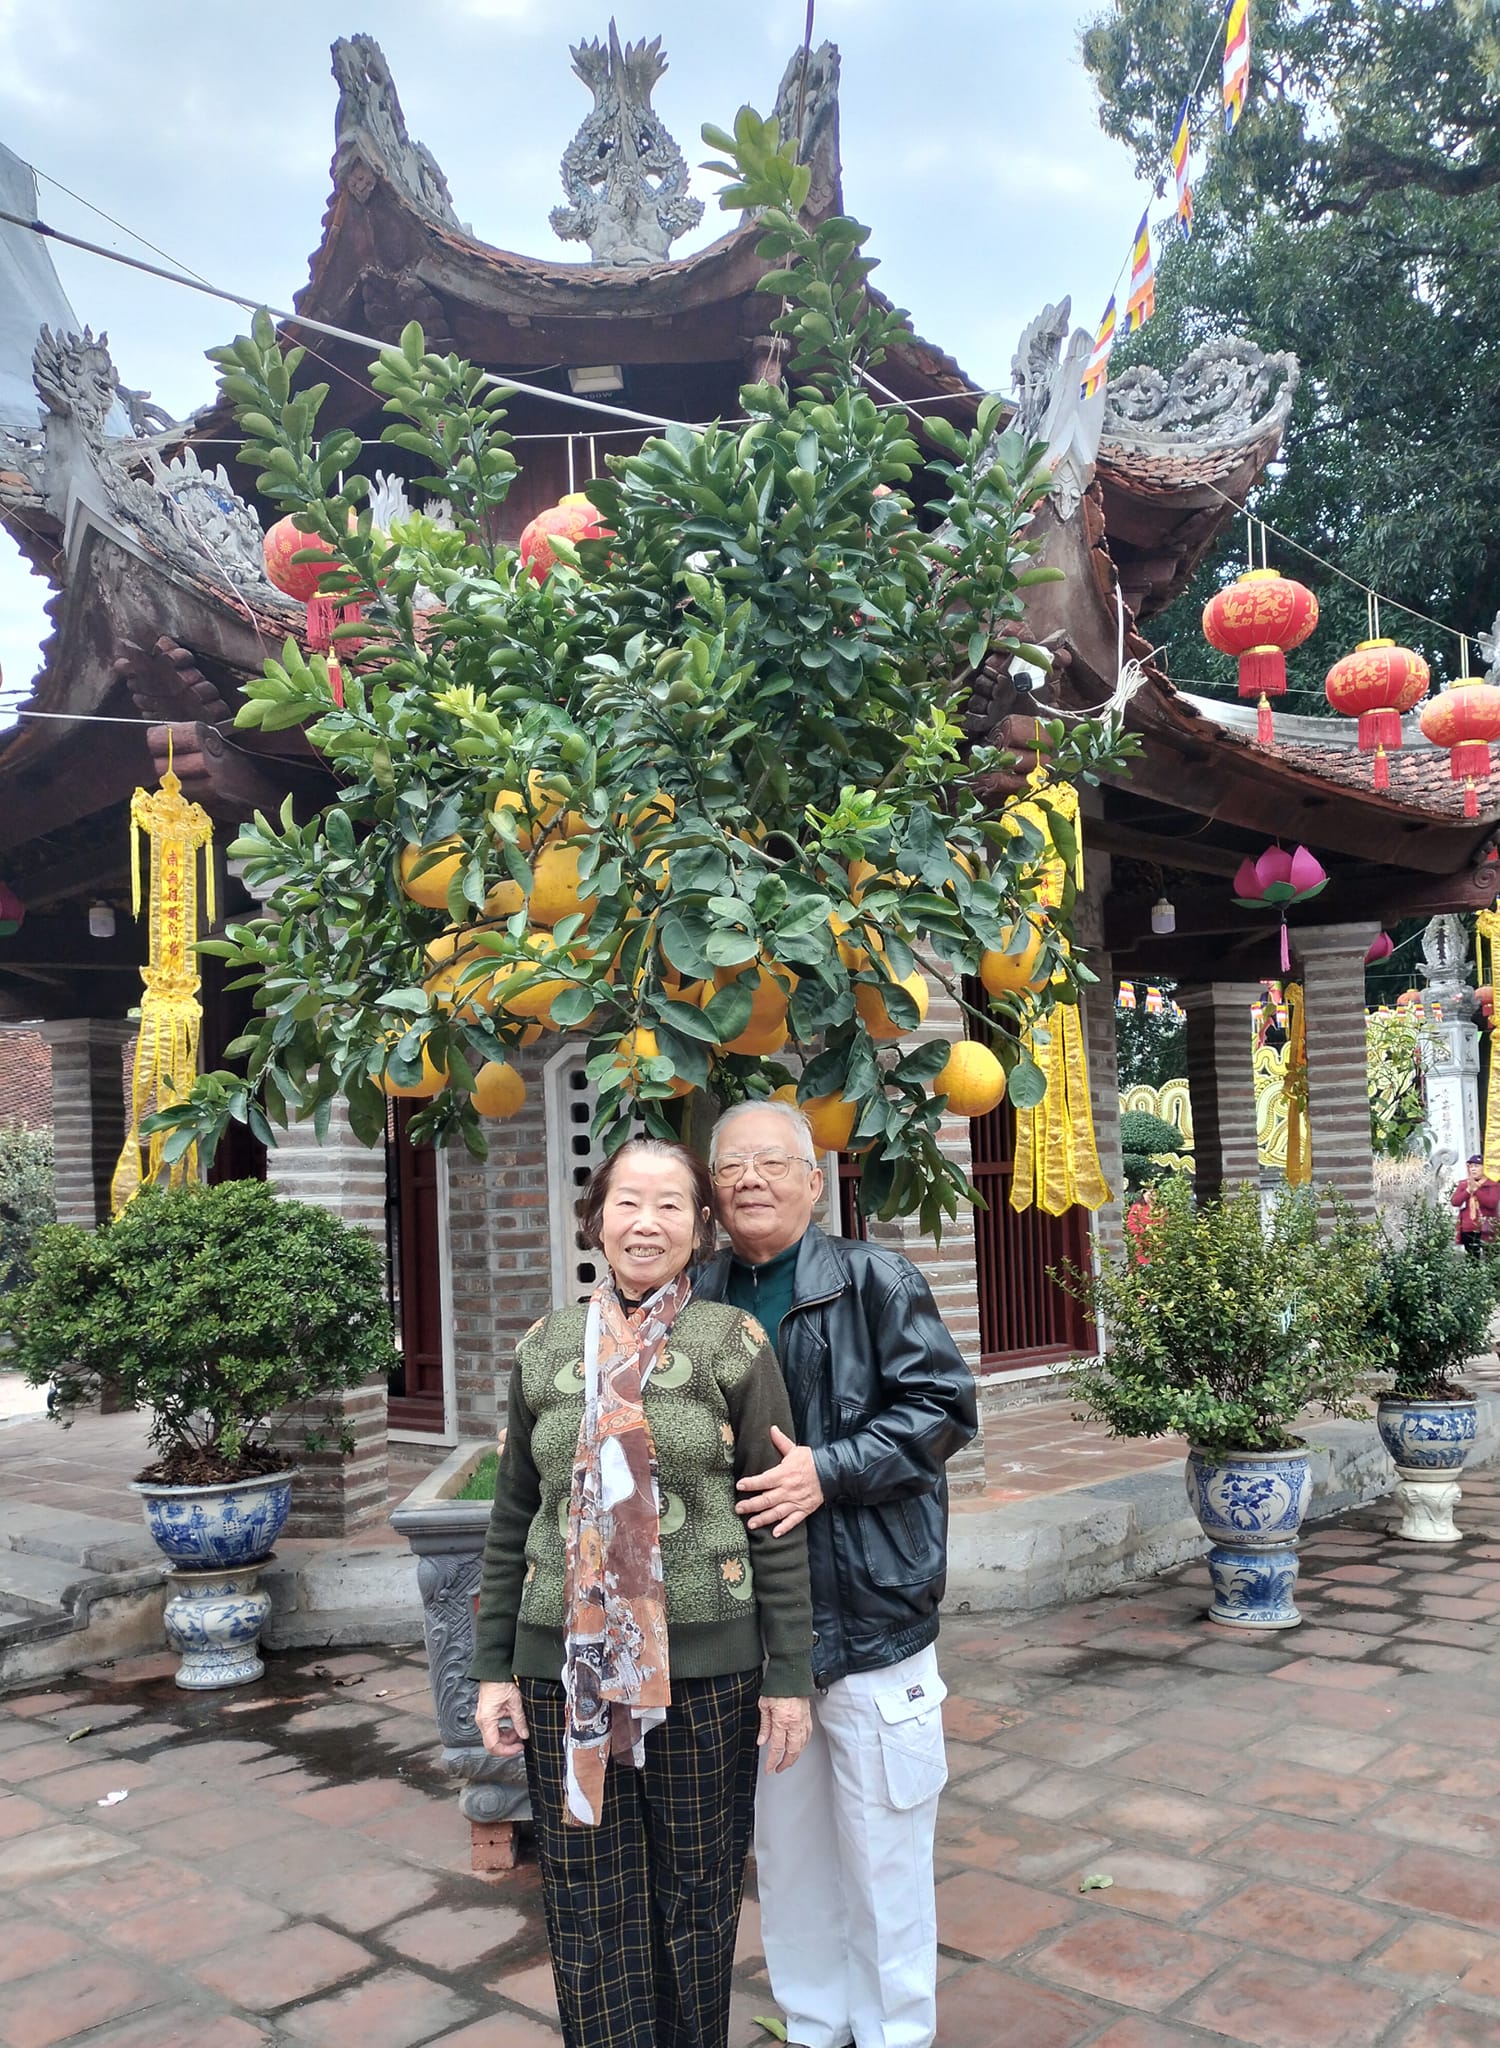 Cụ ông 85 tuổi ở Hà Nội yêu cụ bà 80 tuổi quen qua mạng: 